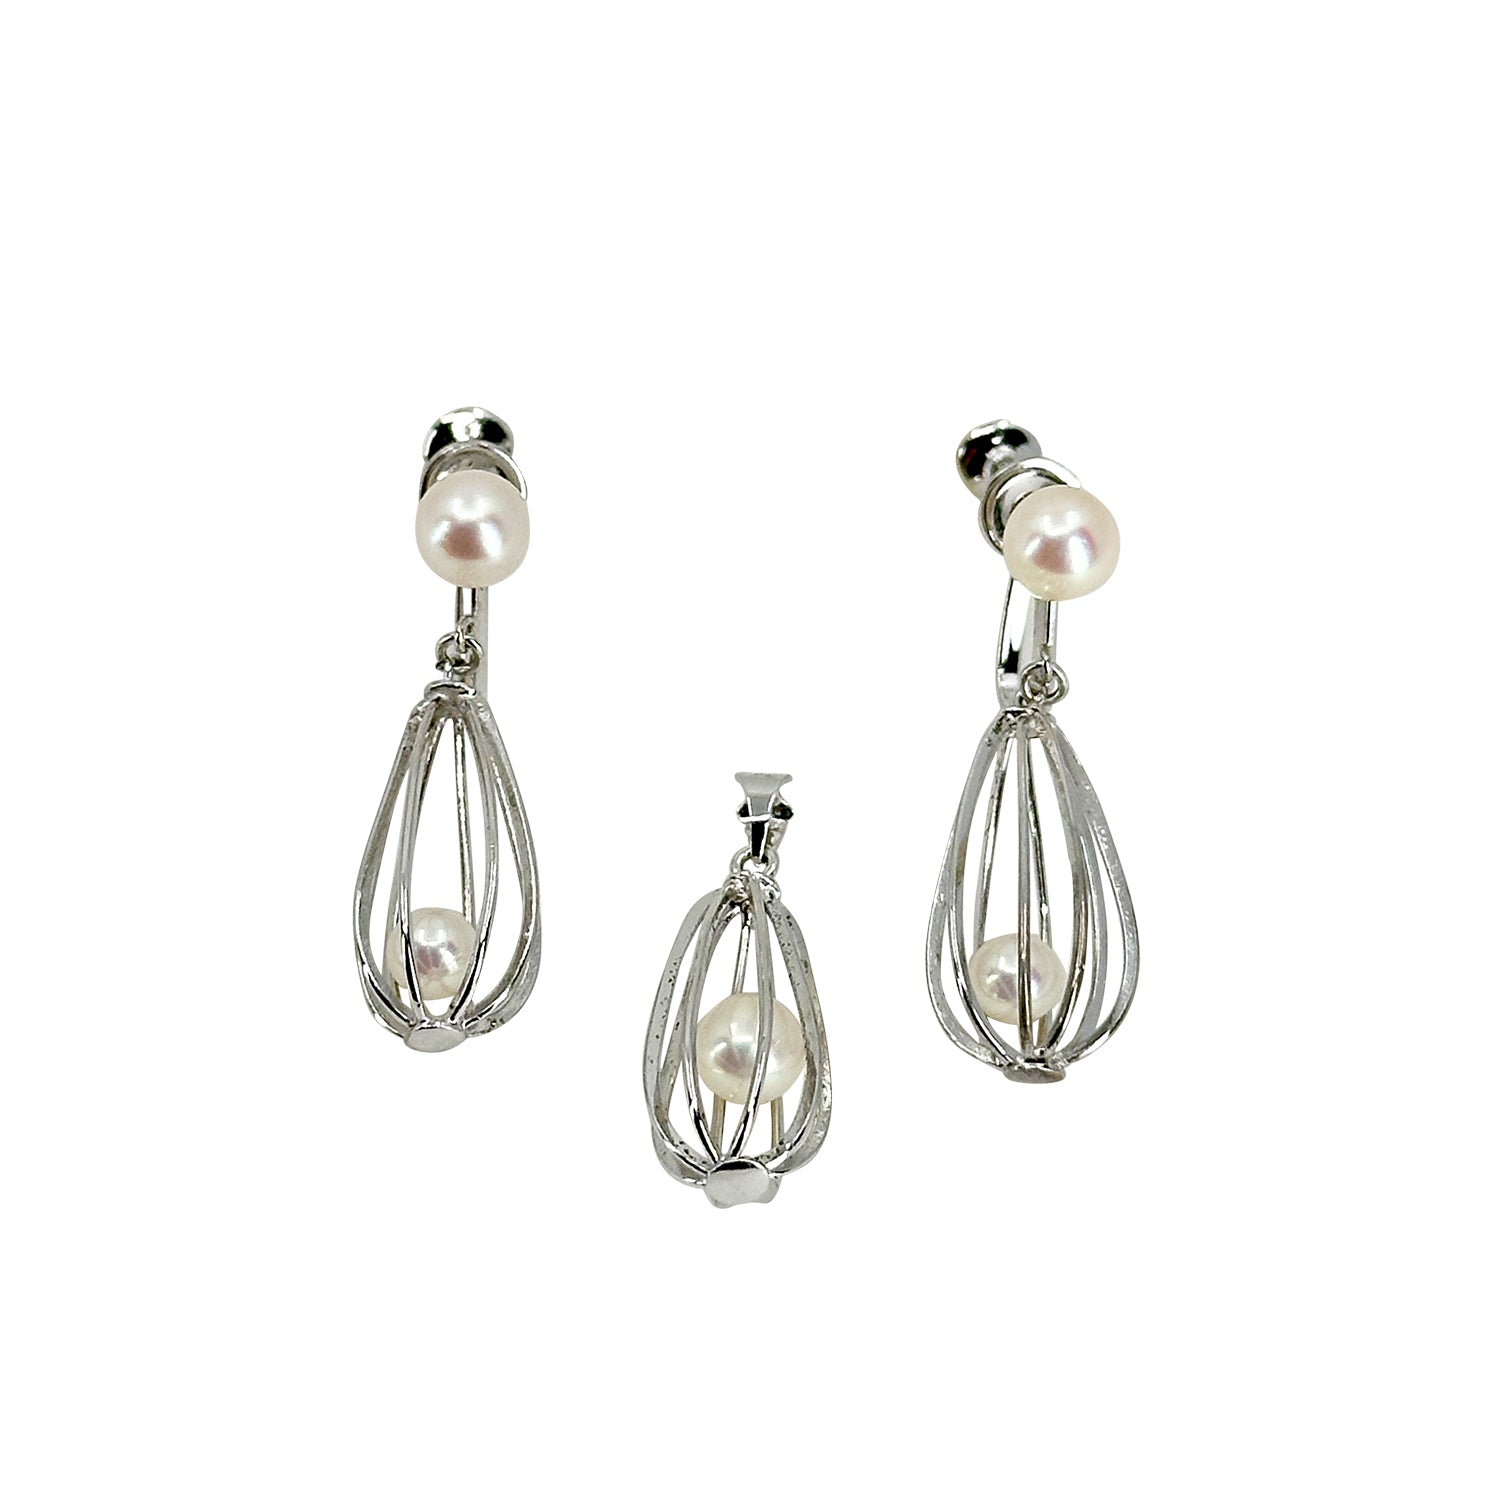 Vintage Akoya Saltwater Cultured Cadged Pearl Screwback Earrings Pendant Set- Sterling Silver